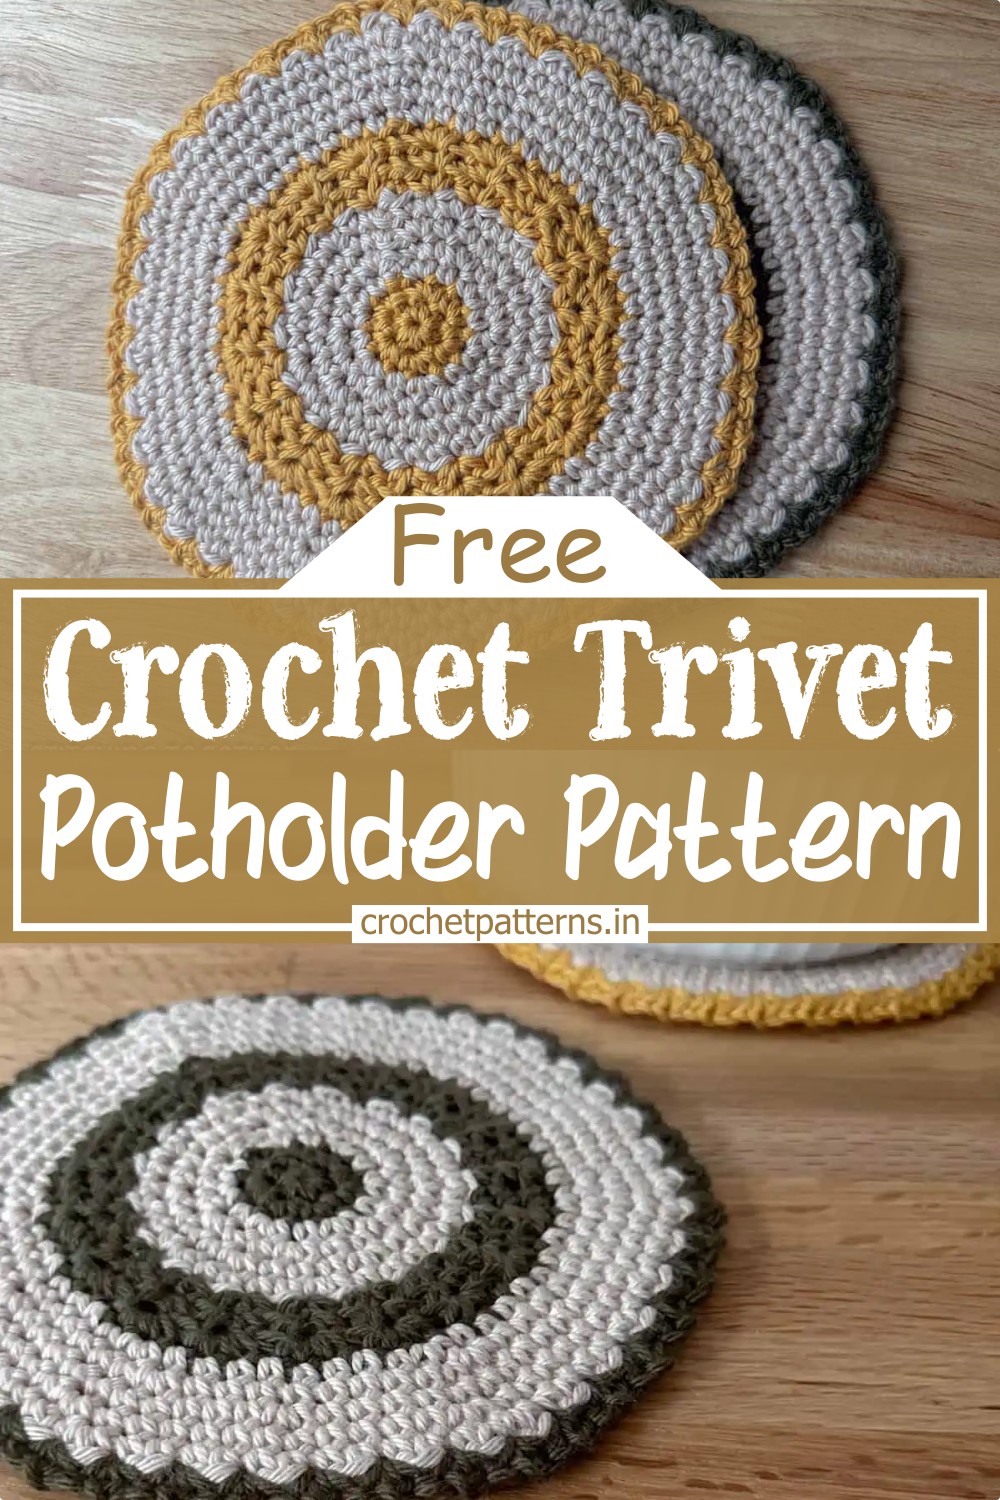 Crochet Round Trivet Potholder
